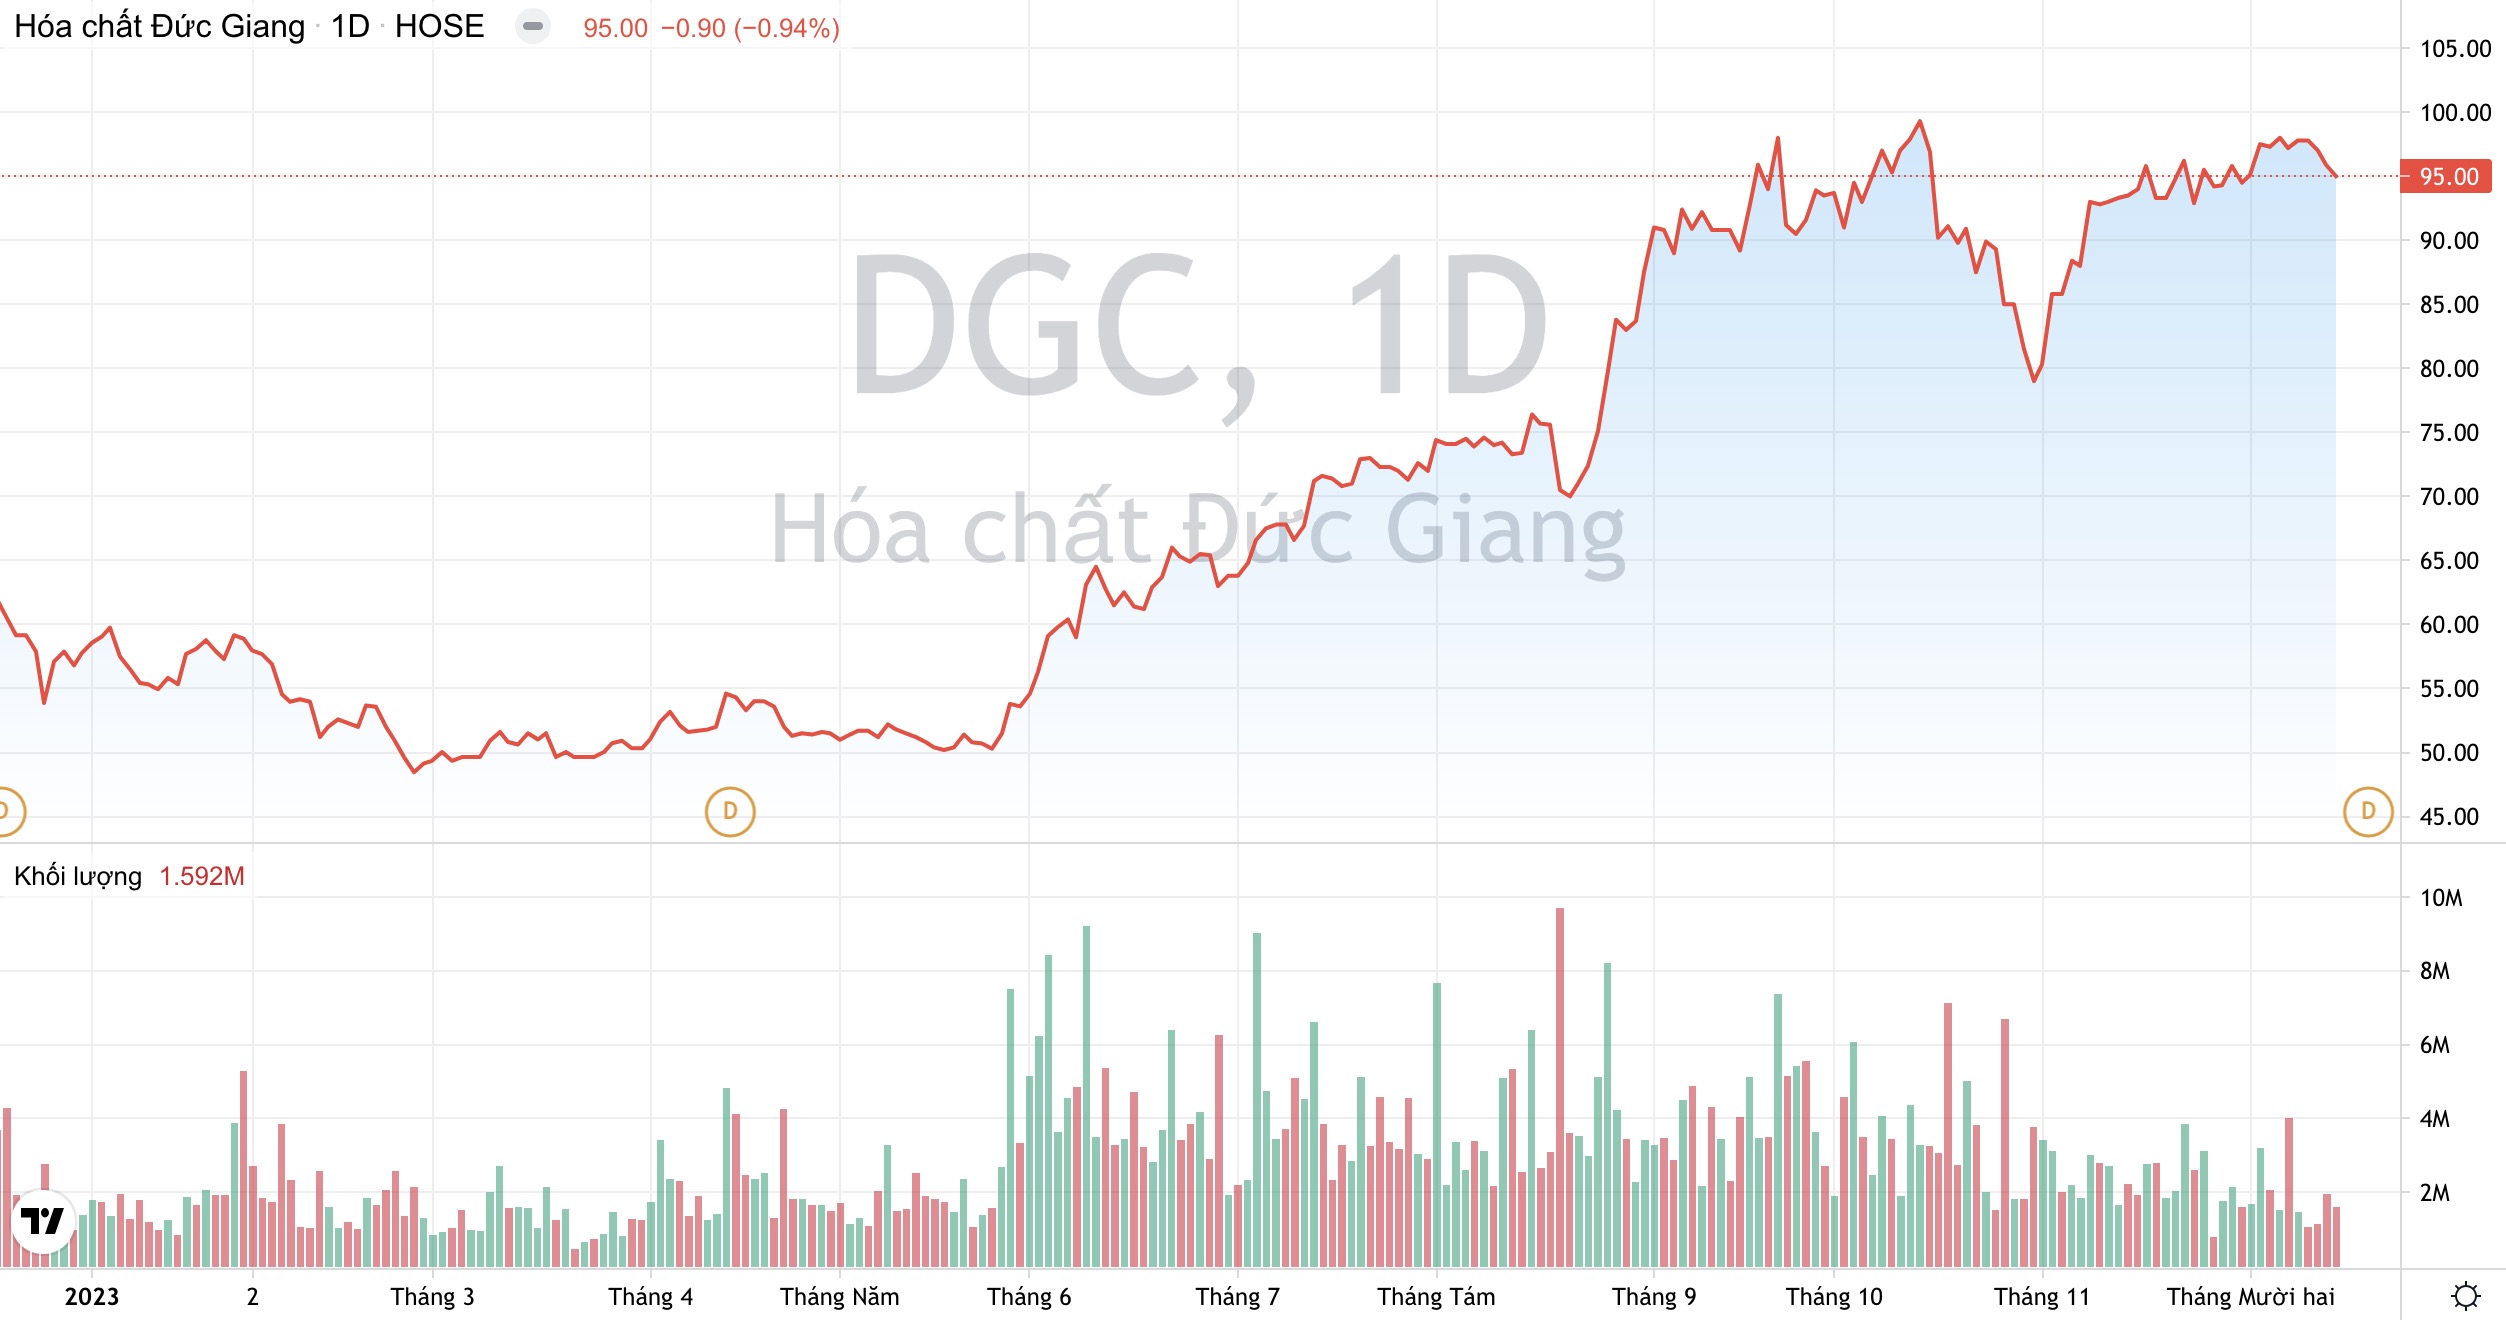 Giá phốt pho vàng dự báo tăng 15%, Dragon Capital mạnh tay gom thêm cổ phiếu DGC 3